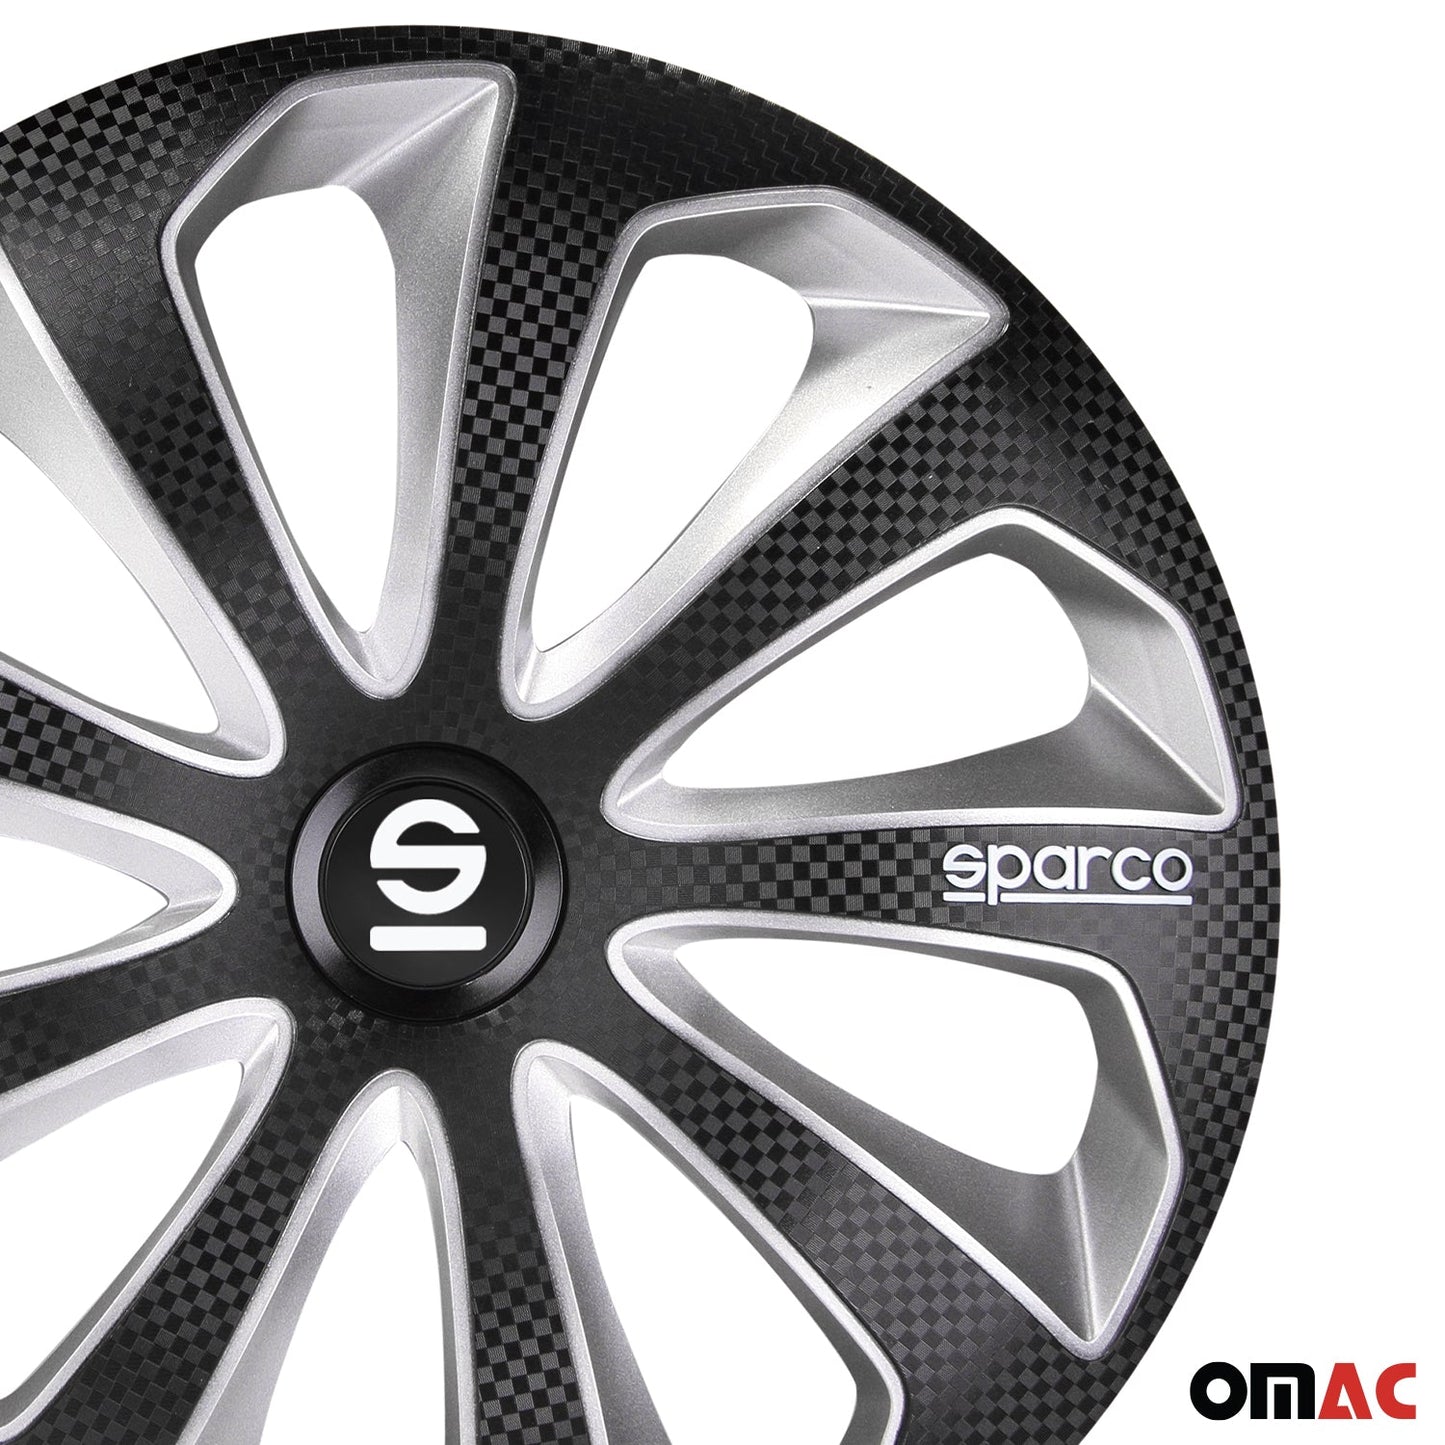 OMAC 15" Sparco Sicilia Wheel Covers Hubcaps Black Silver 4 Pcs 96SPC1575BKSVC